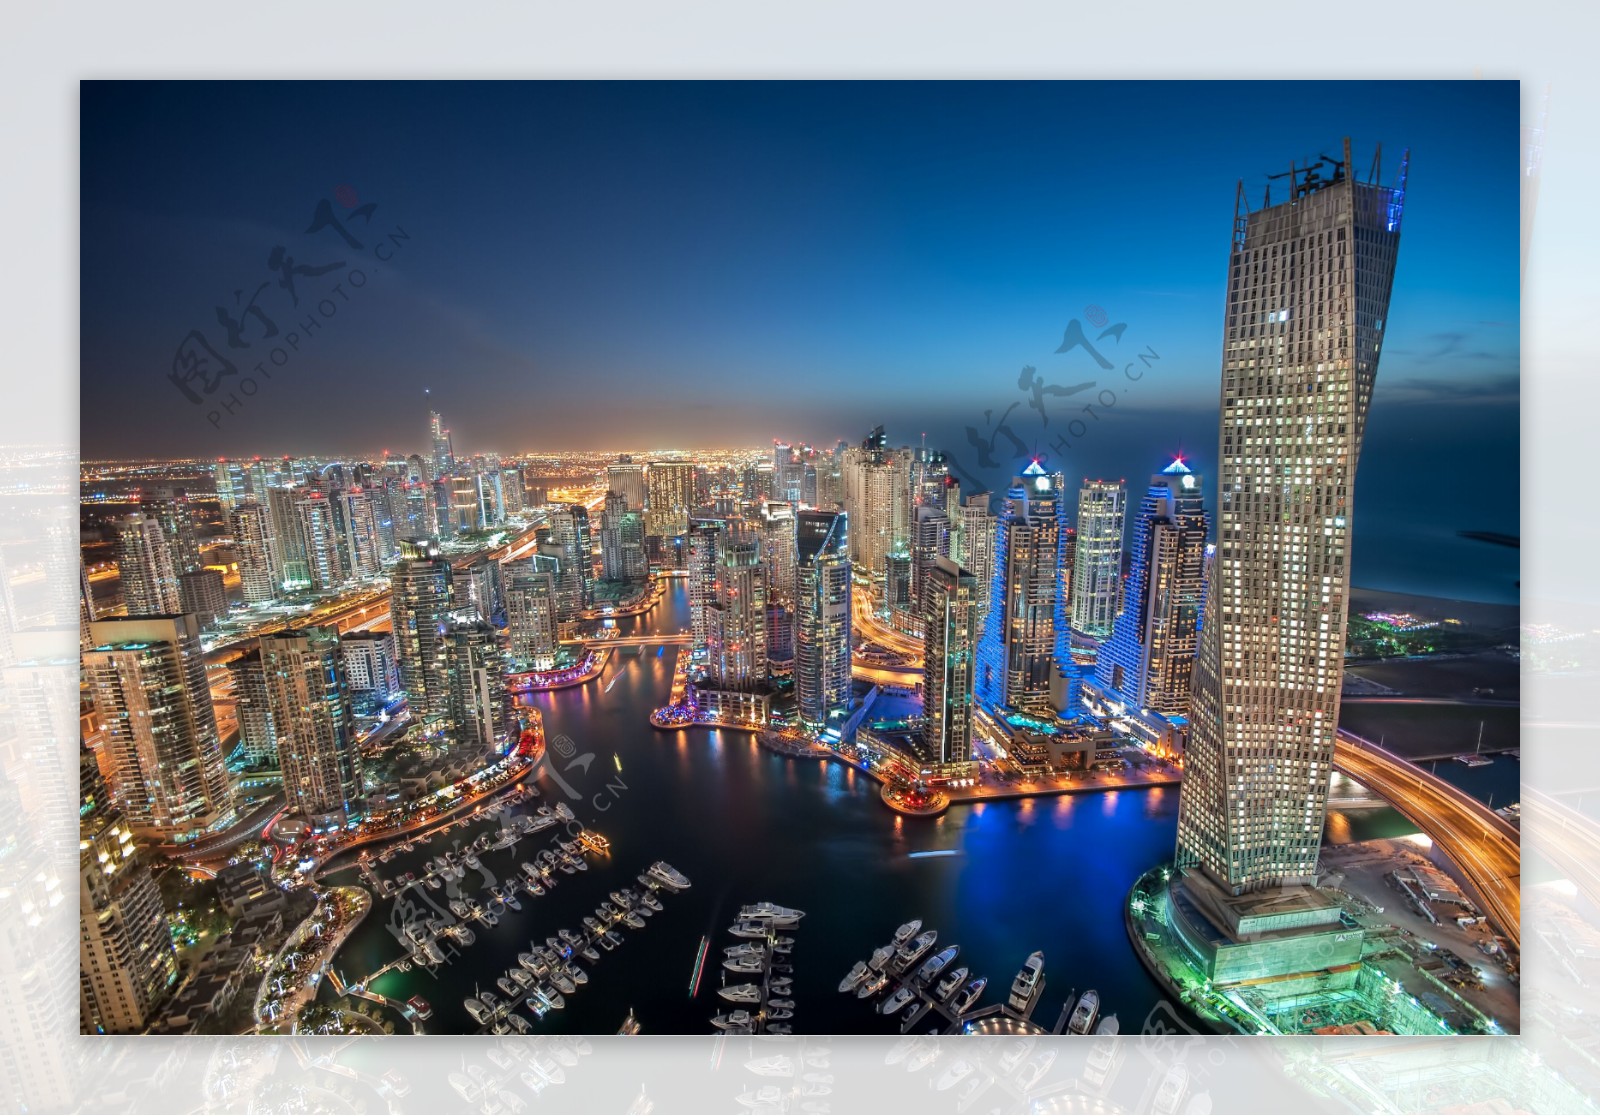 迪拜高楼风景图片